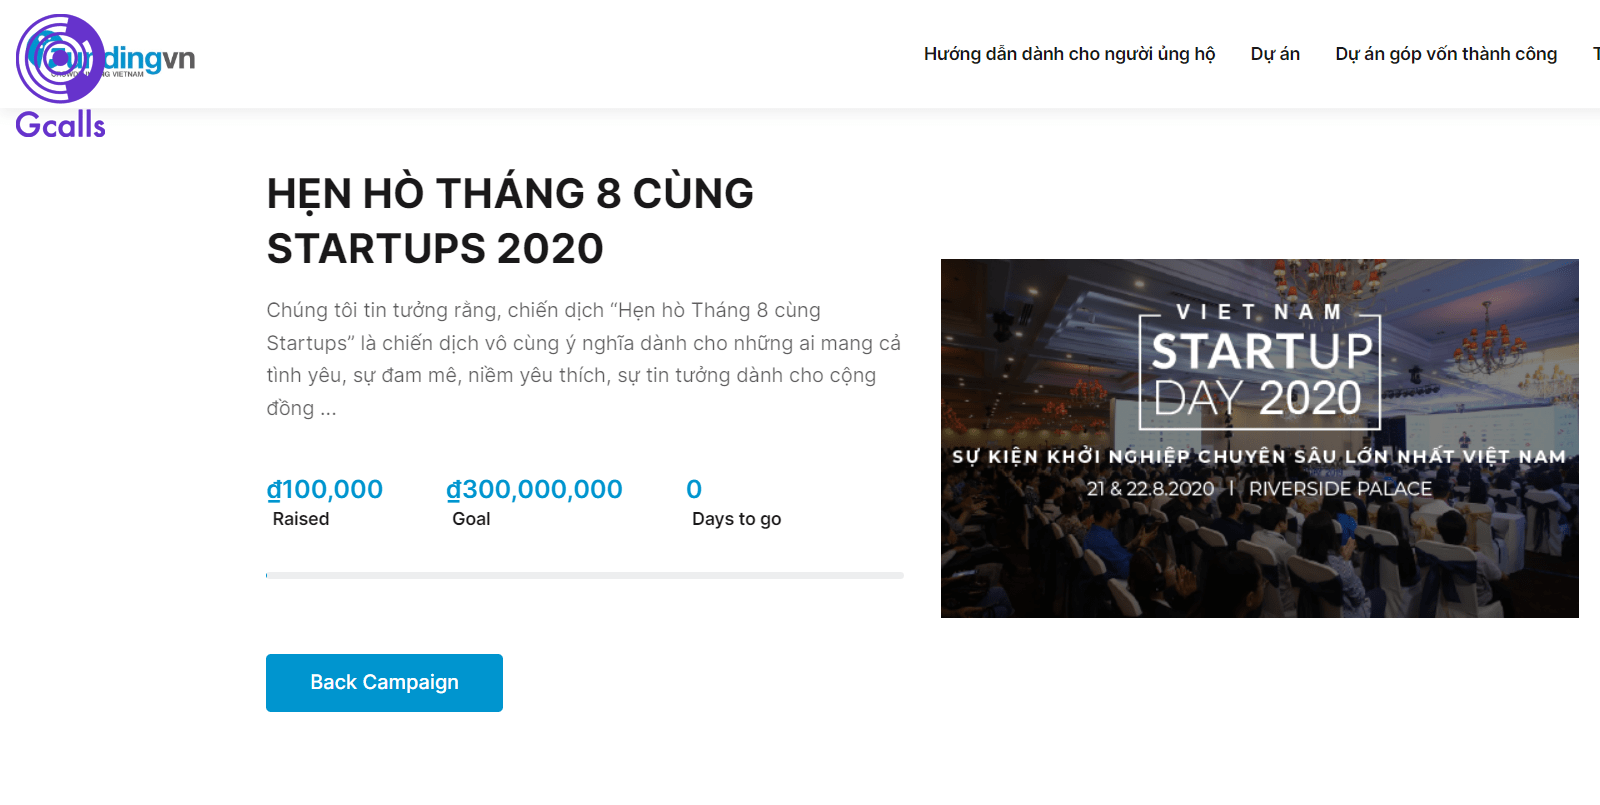 FundingVN là một trong các trang web gọi vốn cộng đồng nổi bật ở Việt Nam 